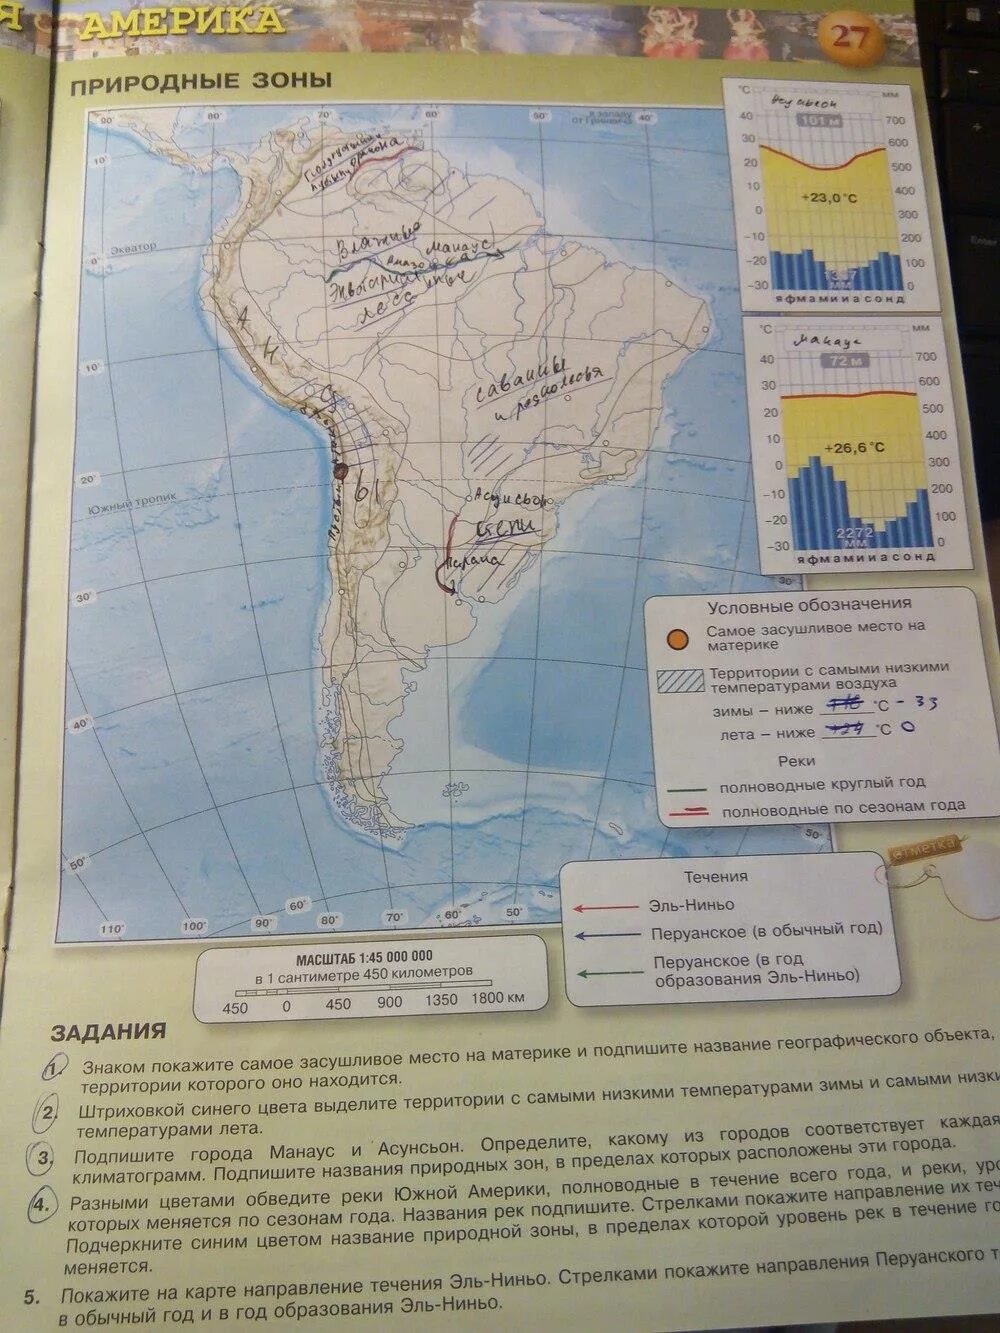 География 7 класс контурные карты стр 27. Карта Южной Америки 7 класс география. Карта по географии 7 класс Южная Америка. Контурные карты стр 26 7 класс